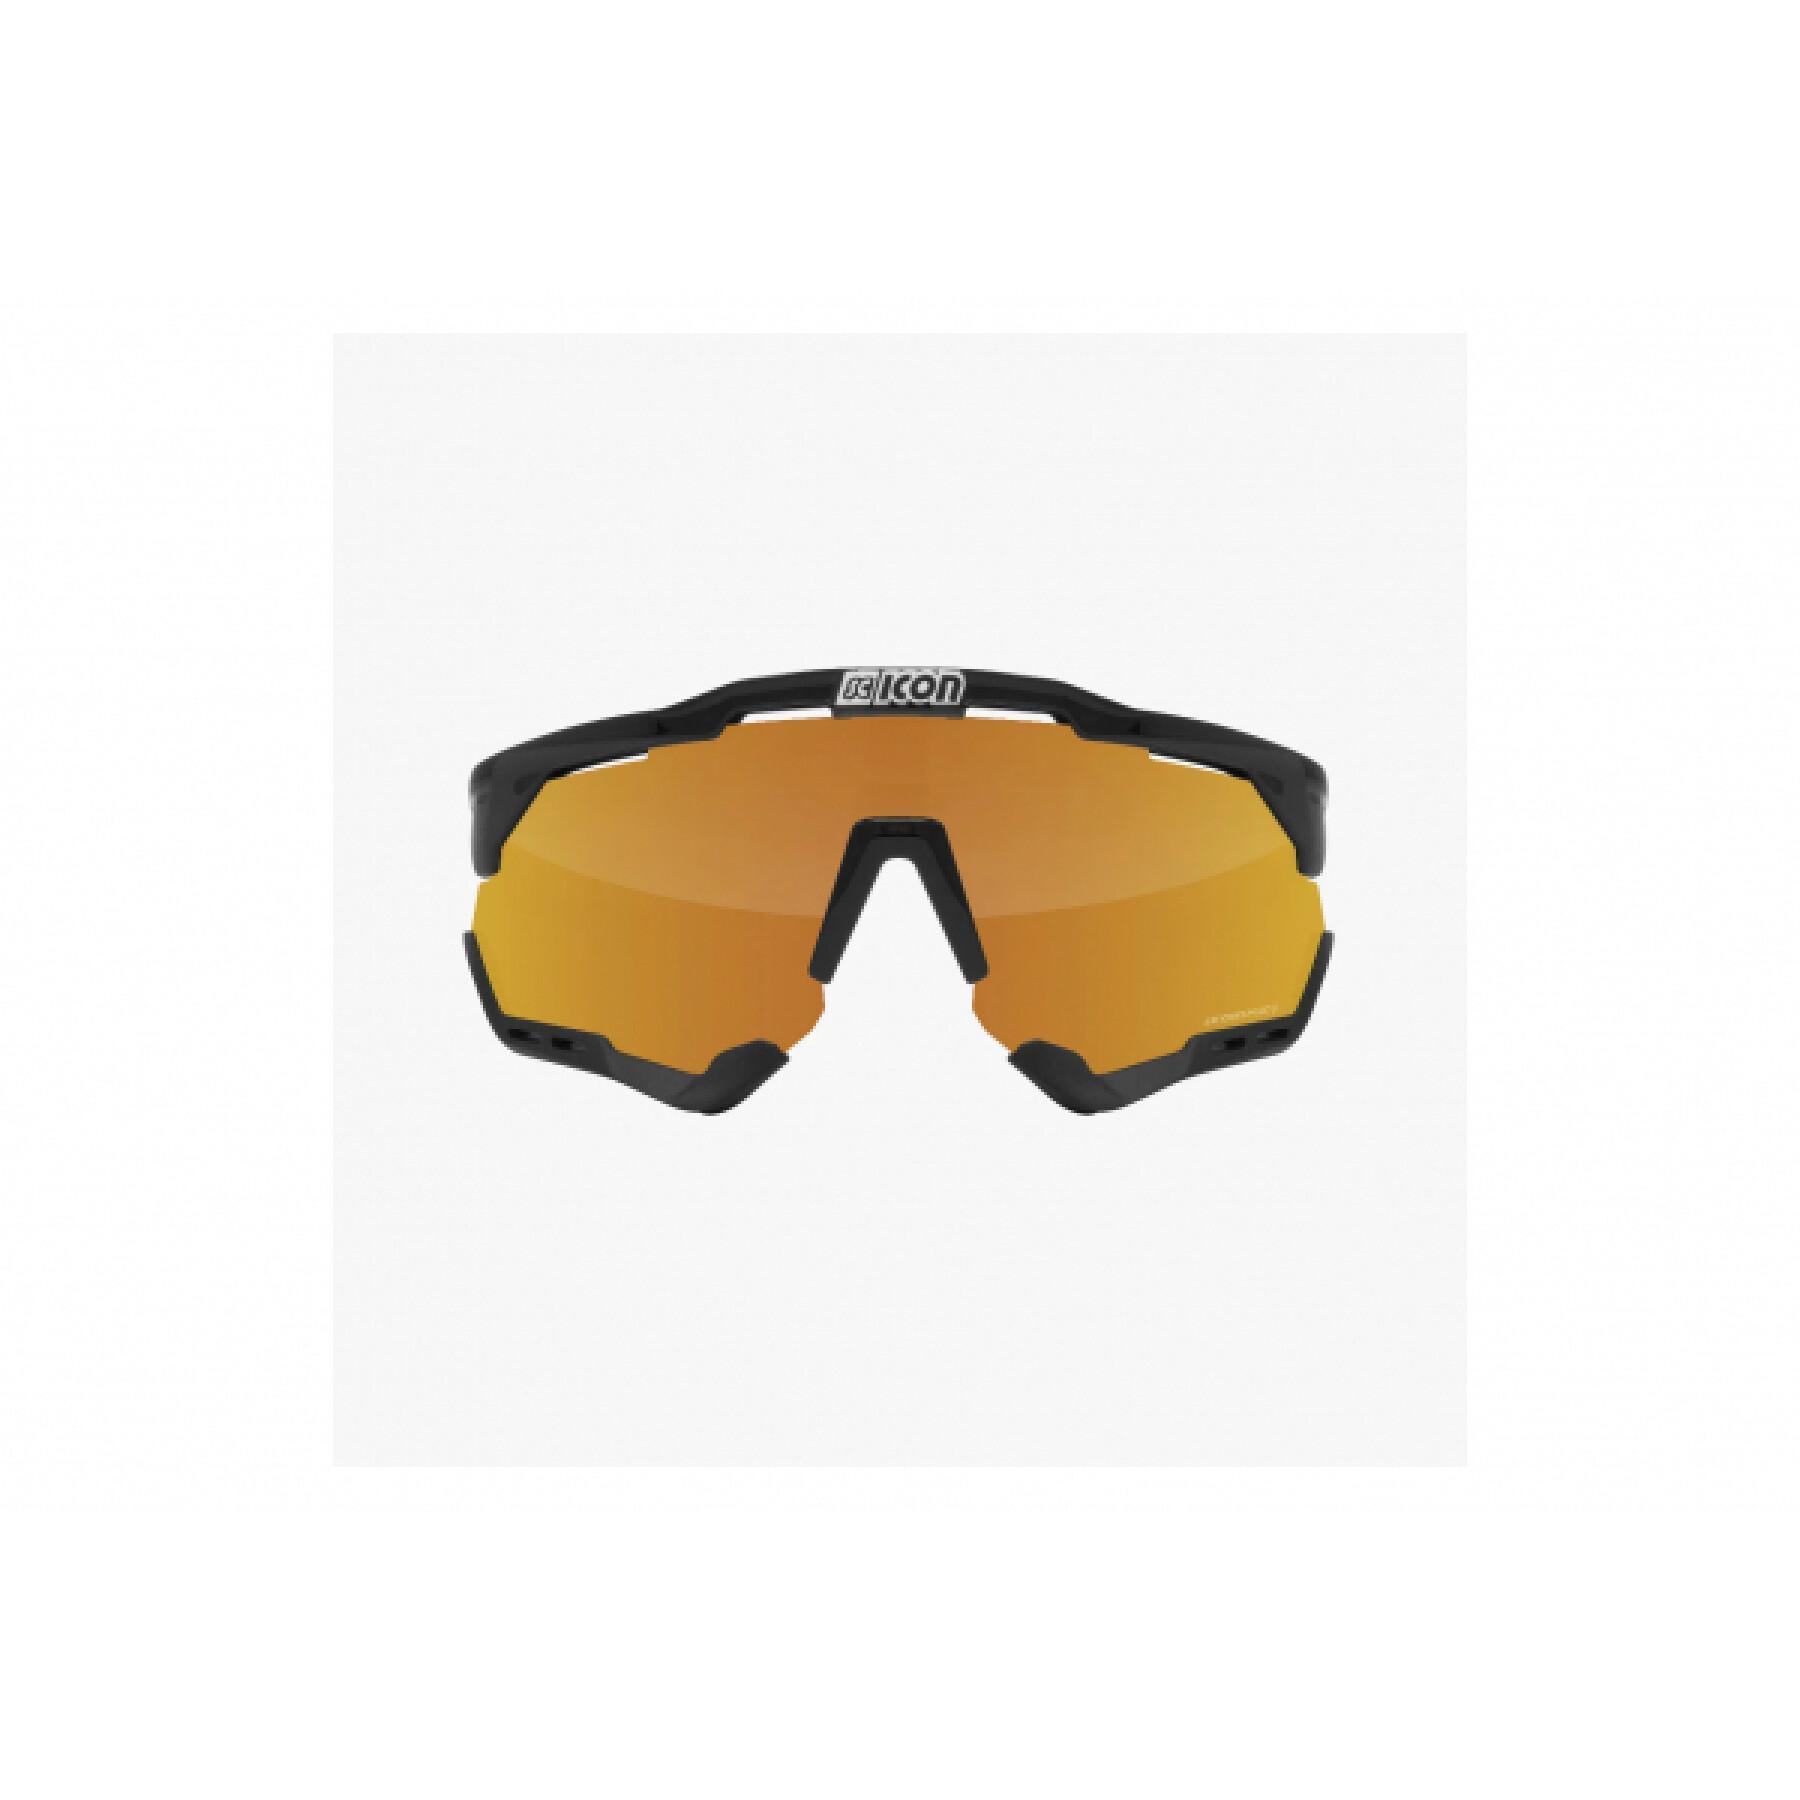 Glasses Scicon Aeroshade XL SCNPP black gloss